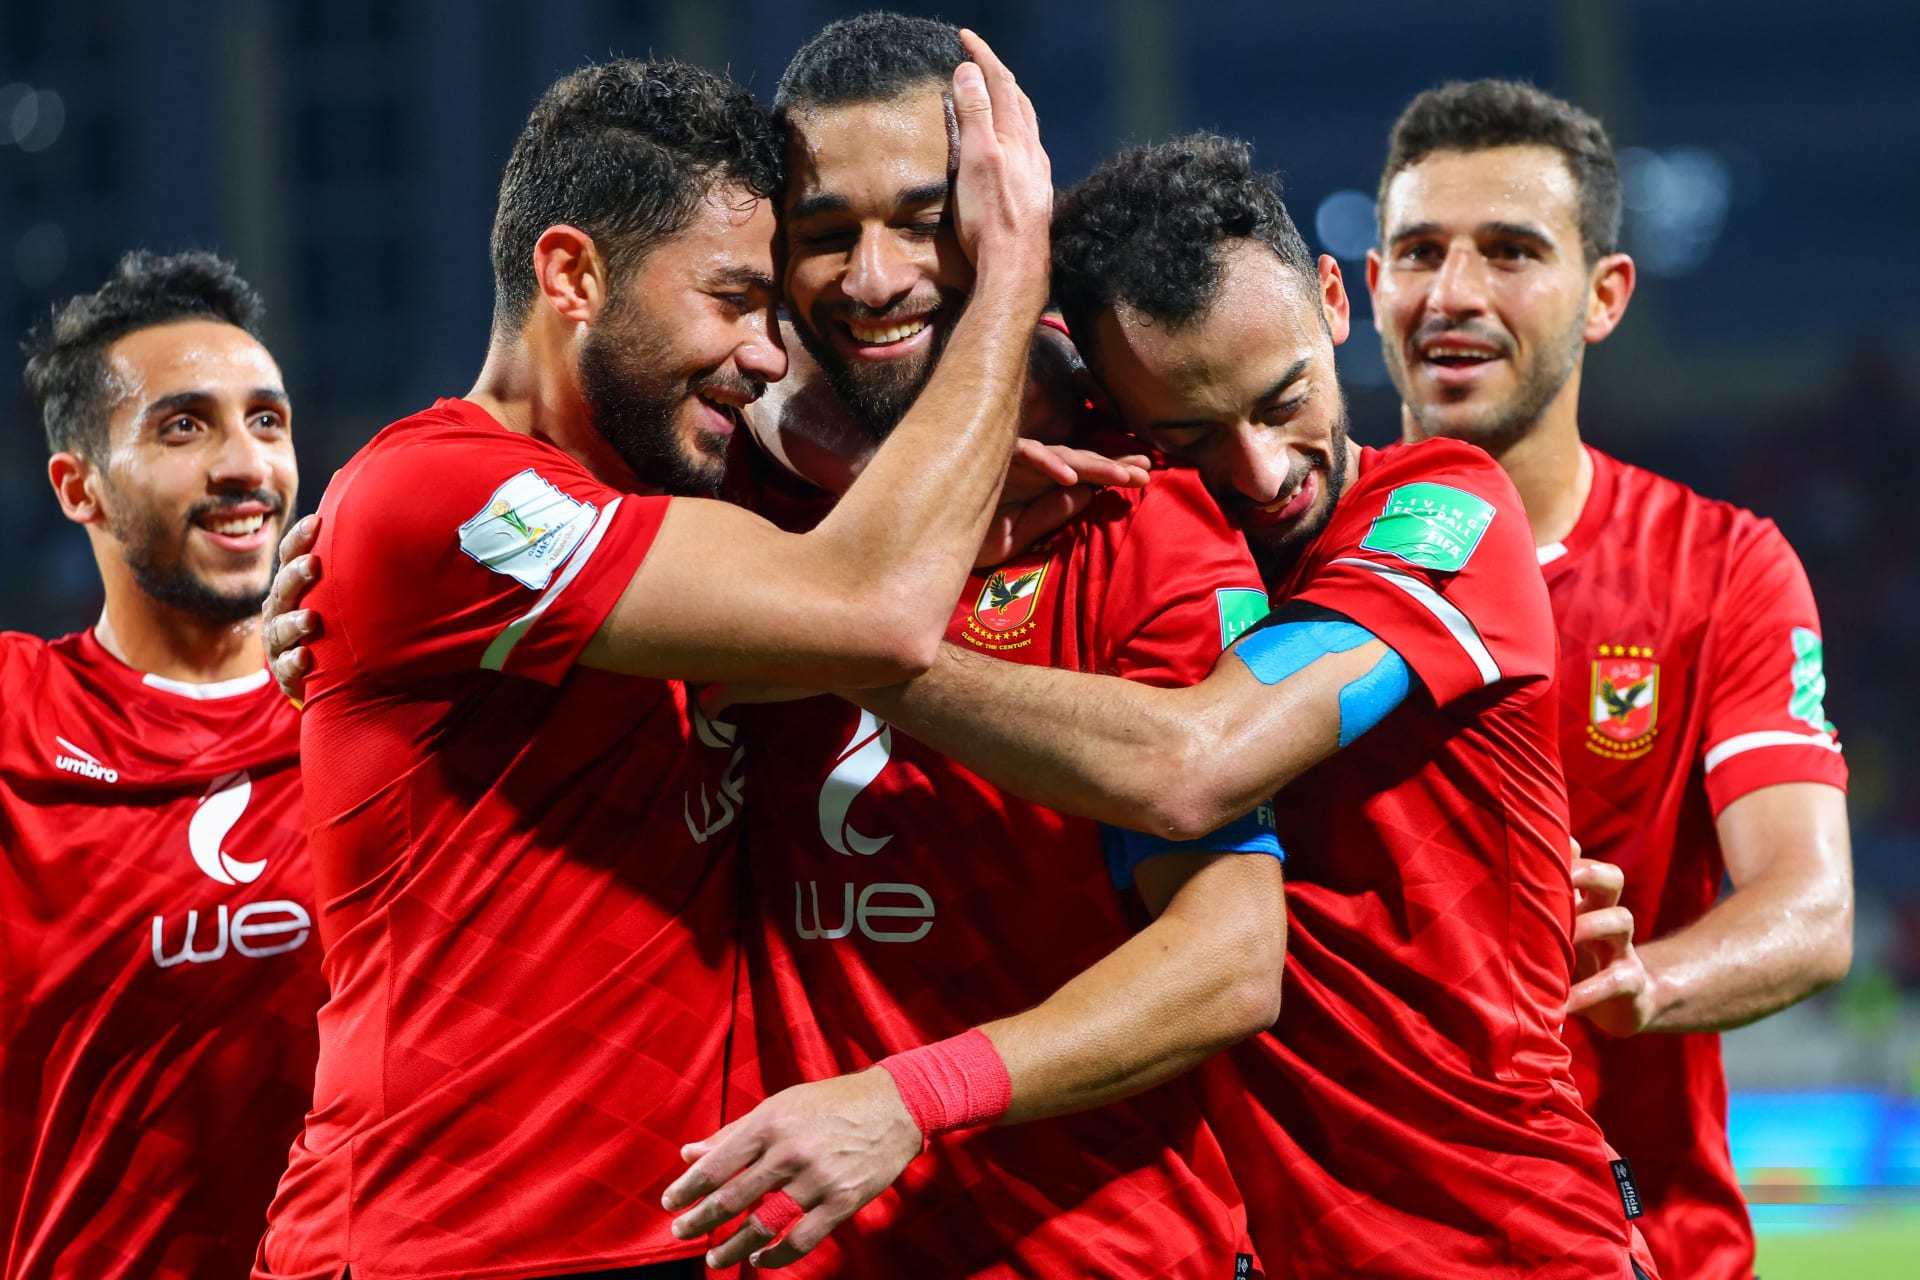 نتائج نصف نهائي بطولة كأس السوبر المصري